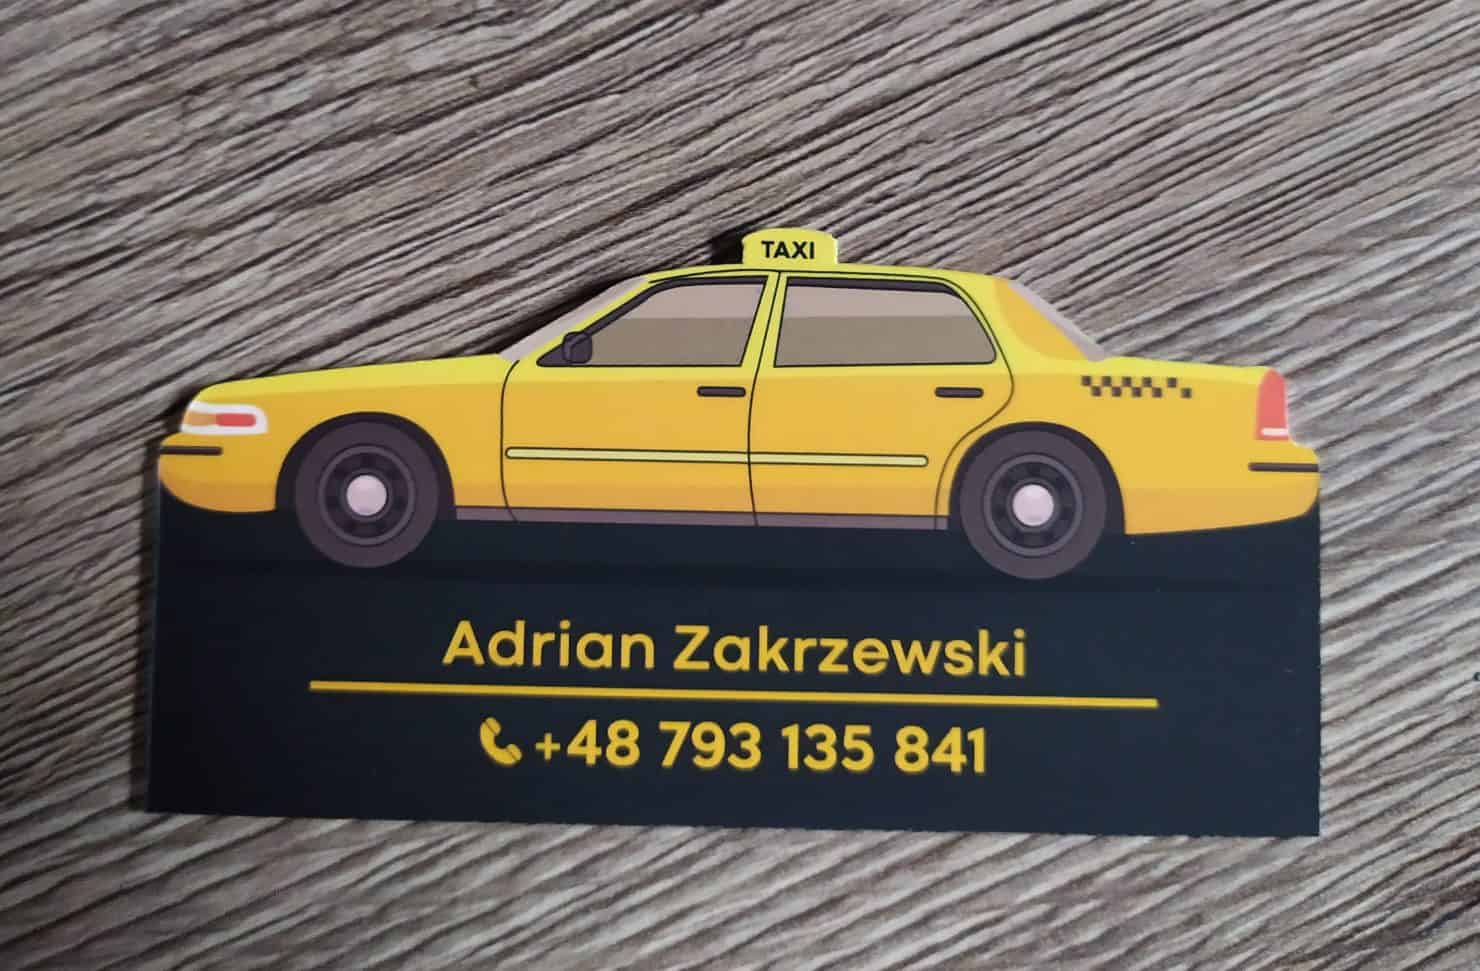 wizytówki wycinane a firmy taksówkarskiej